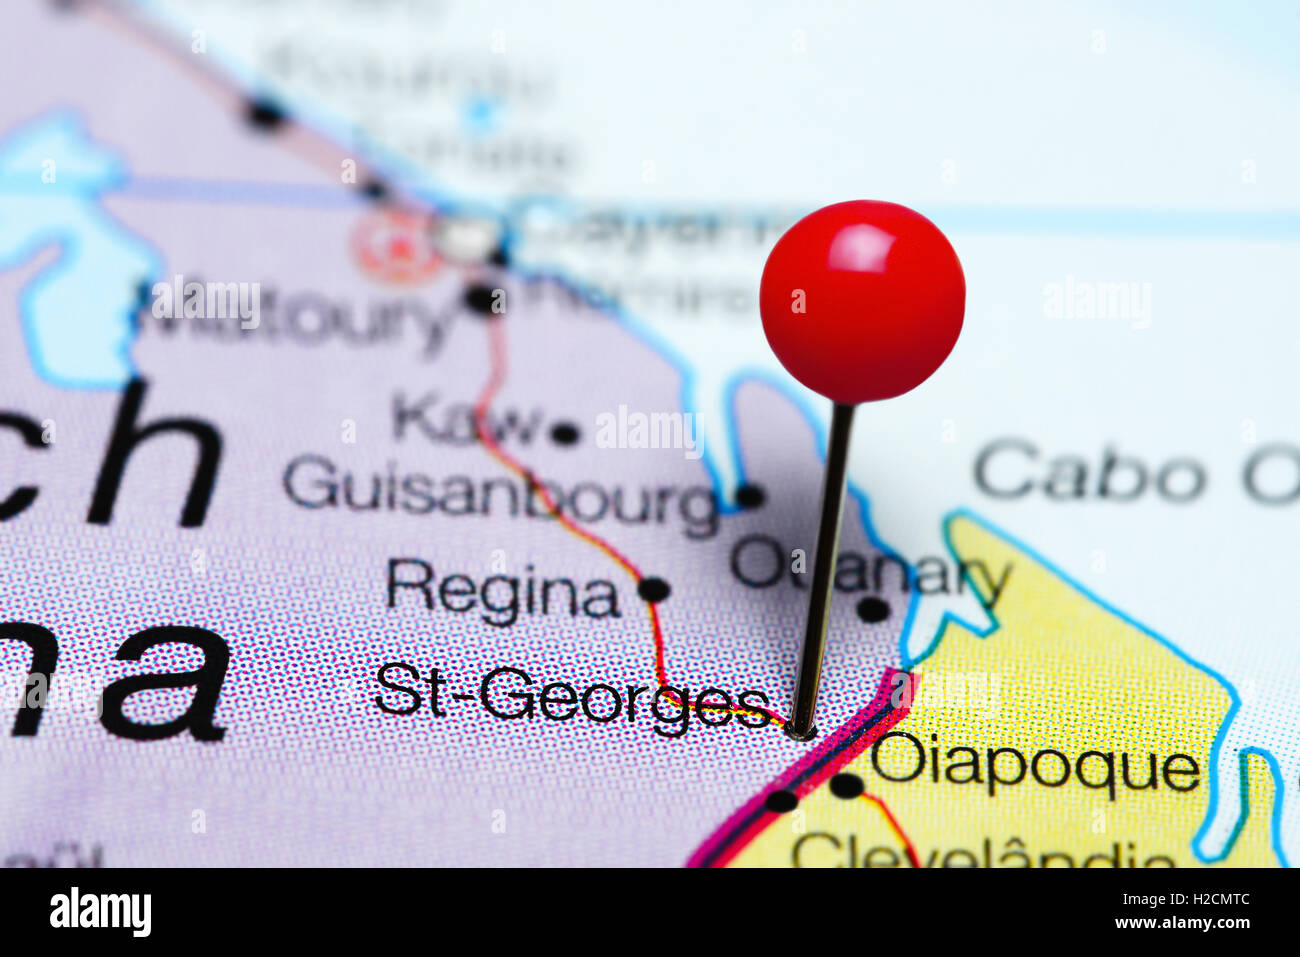 St-Georges épinglée sur une carte de la Guyane française Banque D'Images